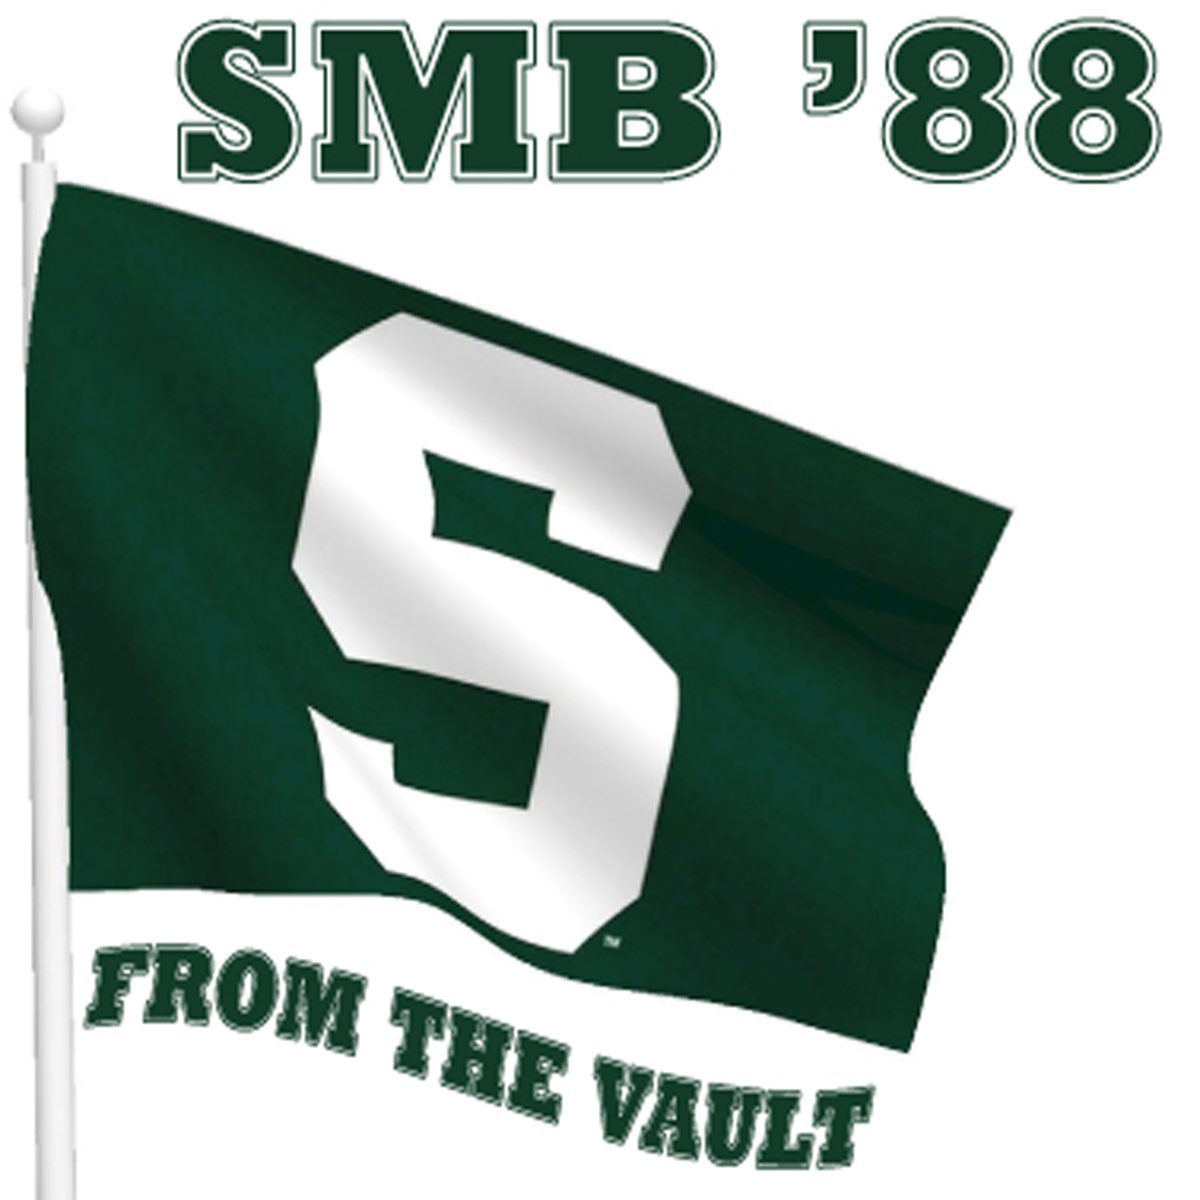 smb88